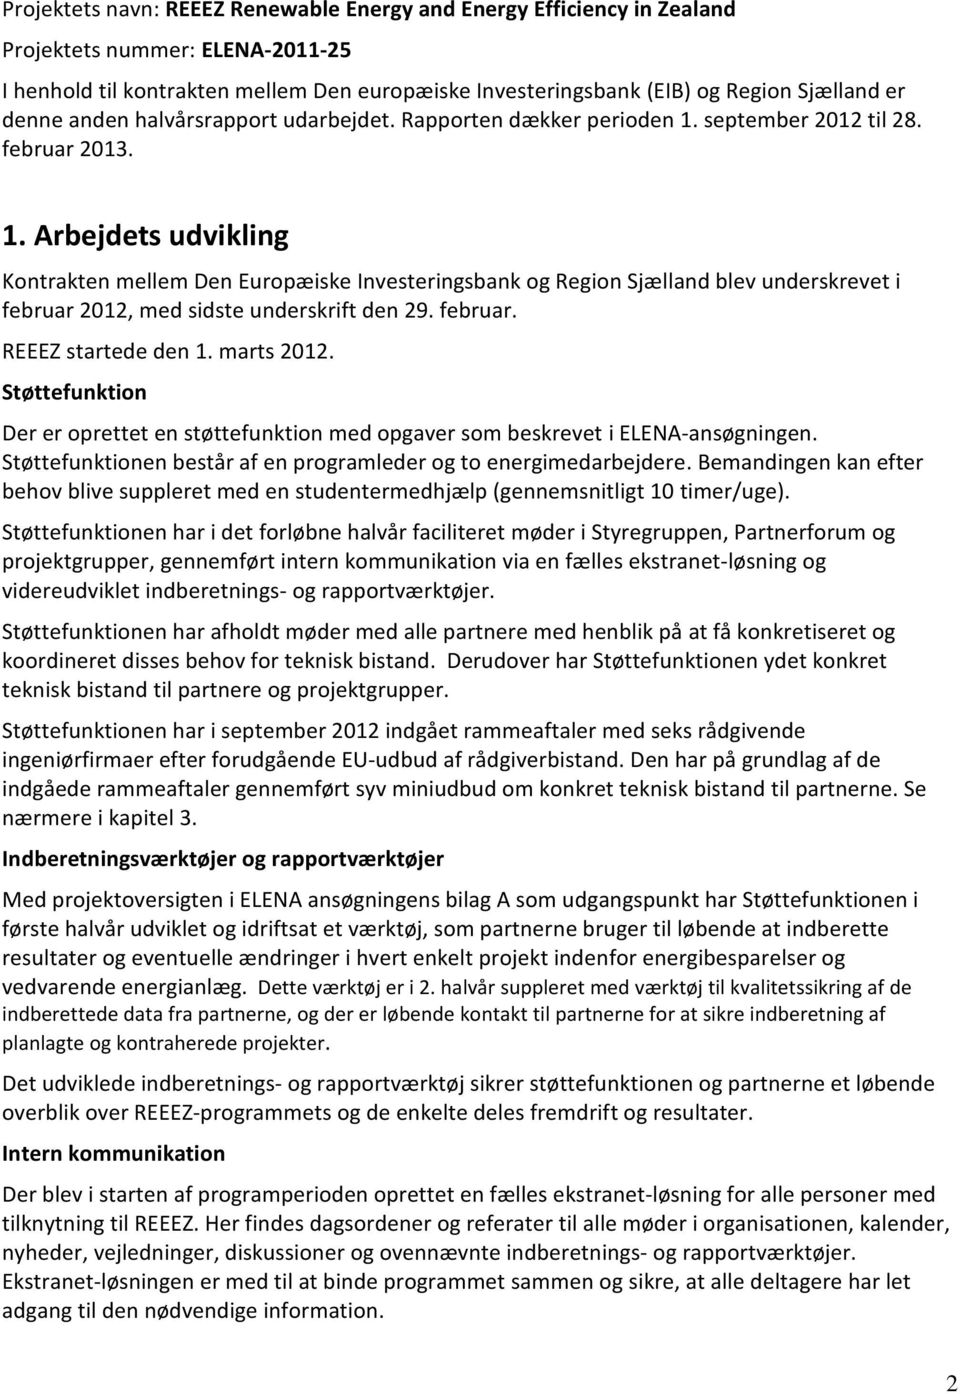 september til 28. februar 2013. 1. Arbejdets udvikling Kontrakten mellem Den Europæiske Investeringsbank og Region Sjælland blev underskrevet i februar, med sidste underskrift den 29. februar. REEEZ startede den 1.